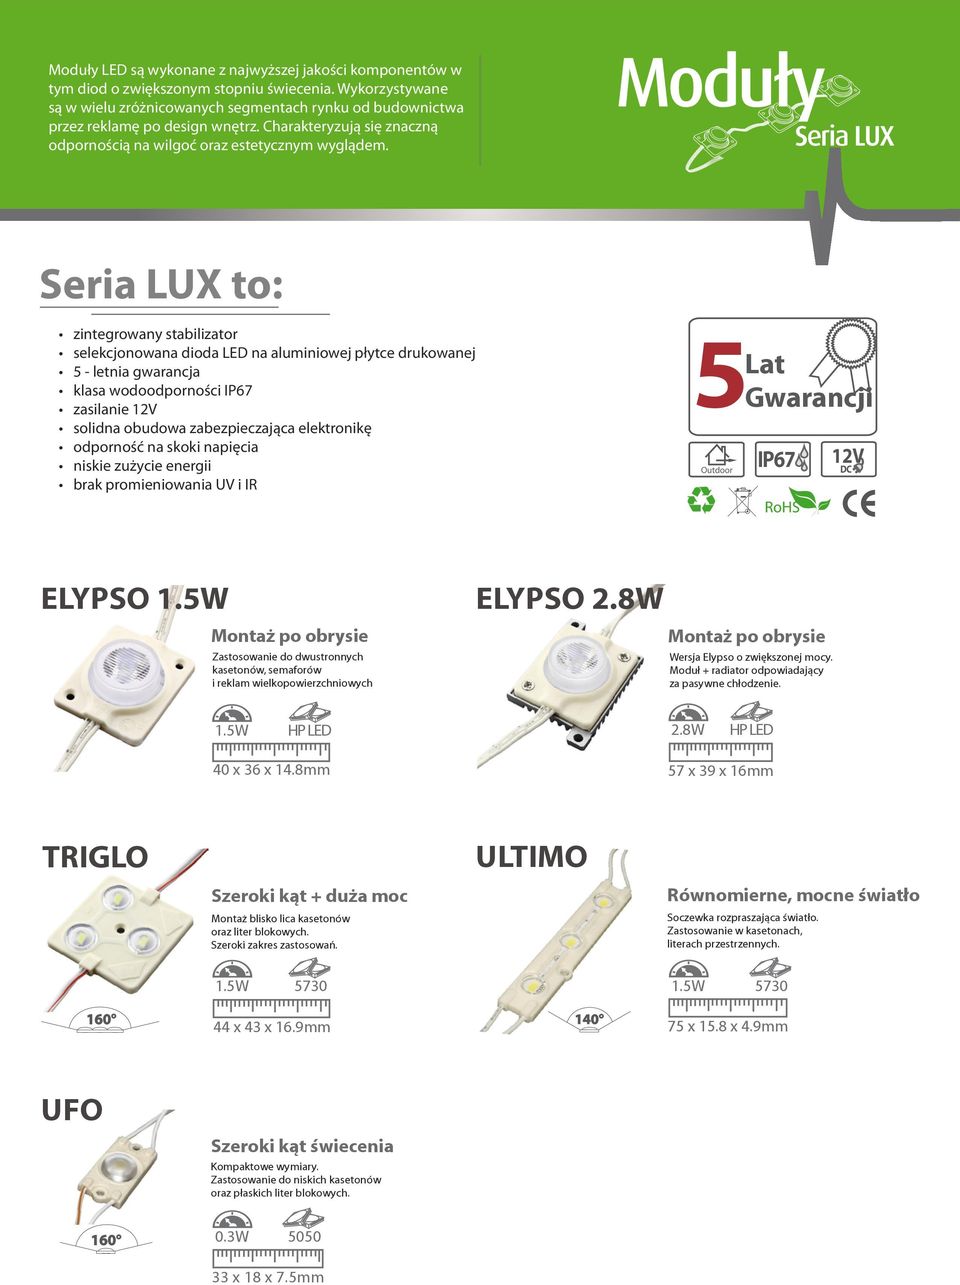 Moduły Seria LUX Seria LUX to: zintegrowany stabilizator selekcjonowana dioda LED na aluminiowej płytce drukowanej 5 - letnia gwarancja klasa wodoodporności IP67 zasilanie 12V solidna obudowa